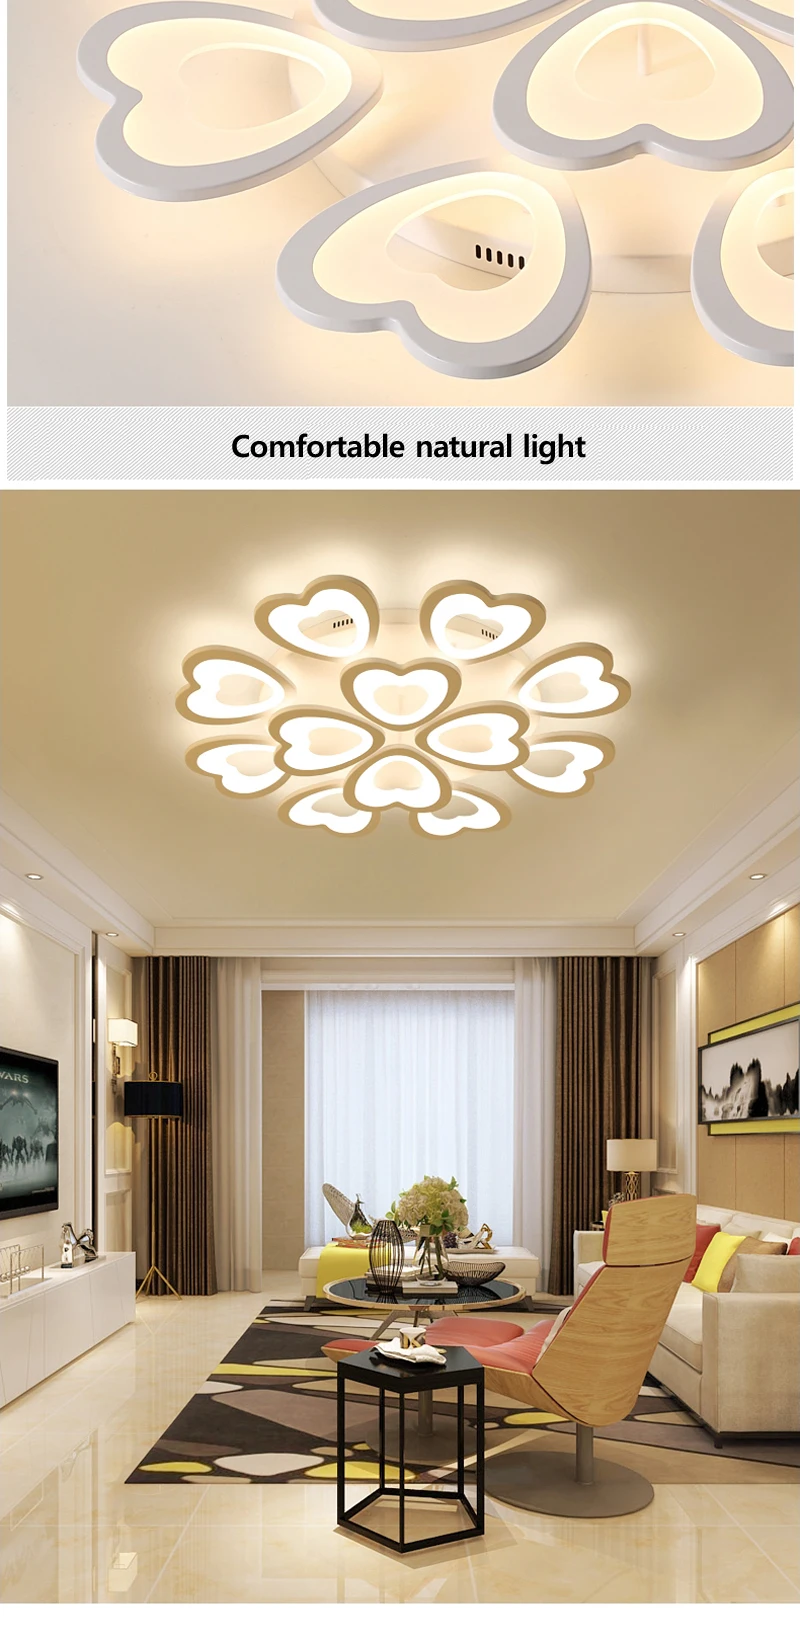 Современный минималистичный белый Железный в форме сердца светодиодный мерцающий потолочный светильник креативный скандинавский акриловый потолочный светильник для спальни светильник